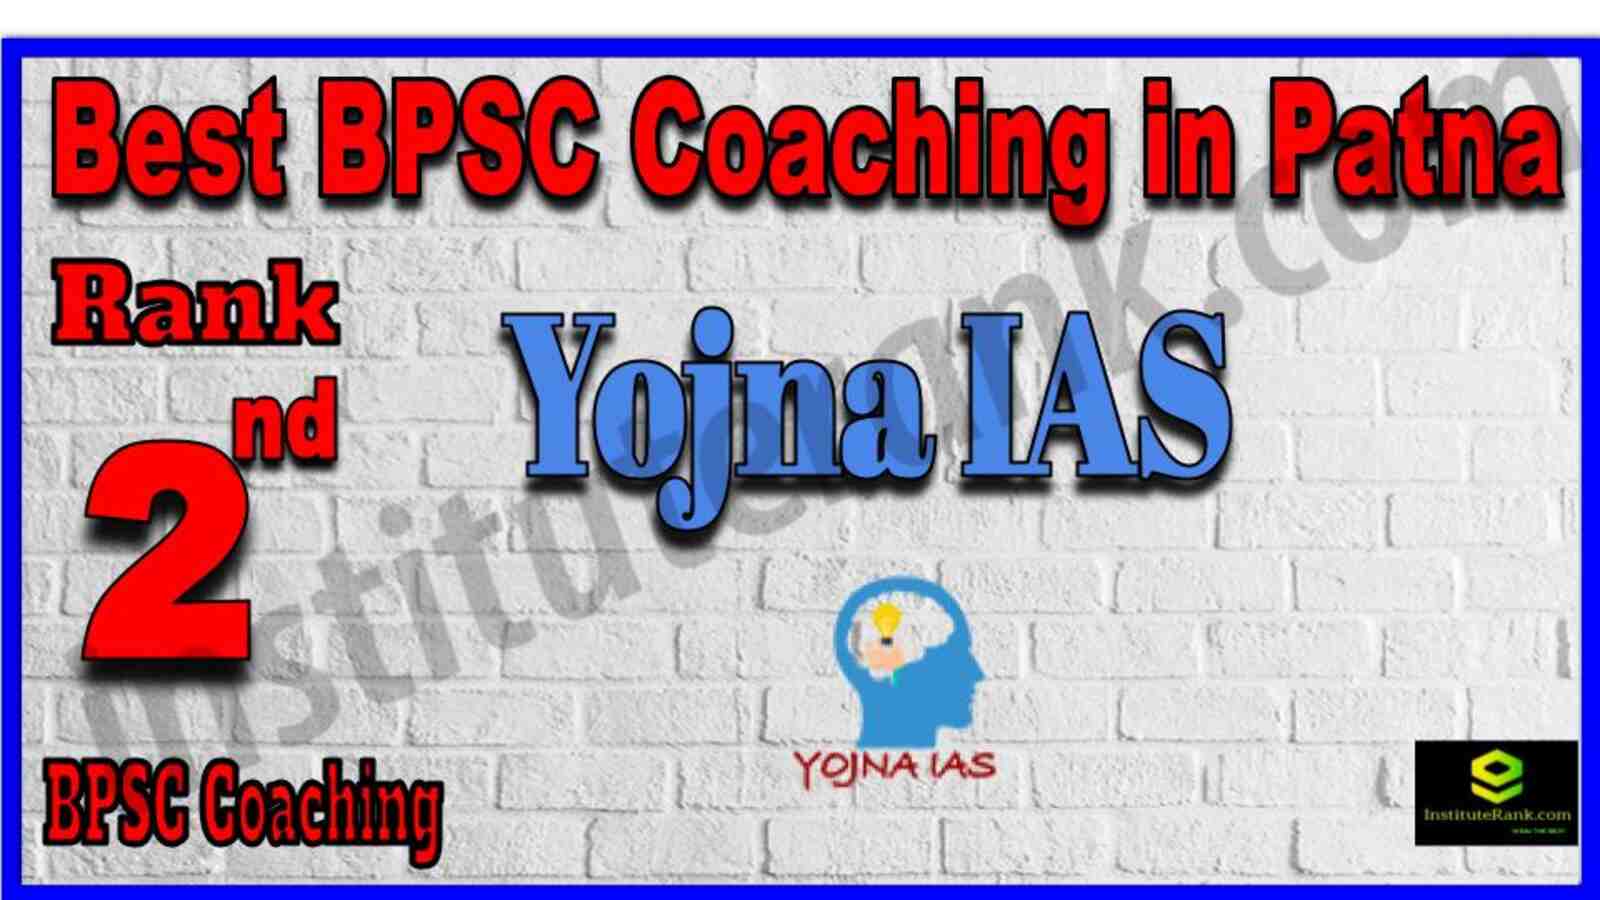 Rank 2 Best BPSC Coaching Institute in Patna